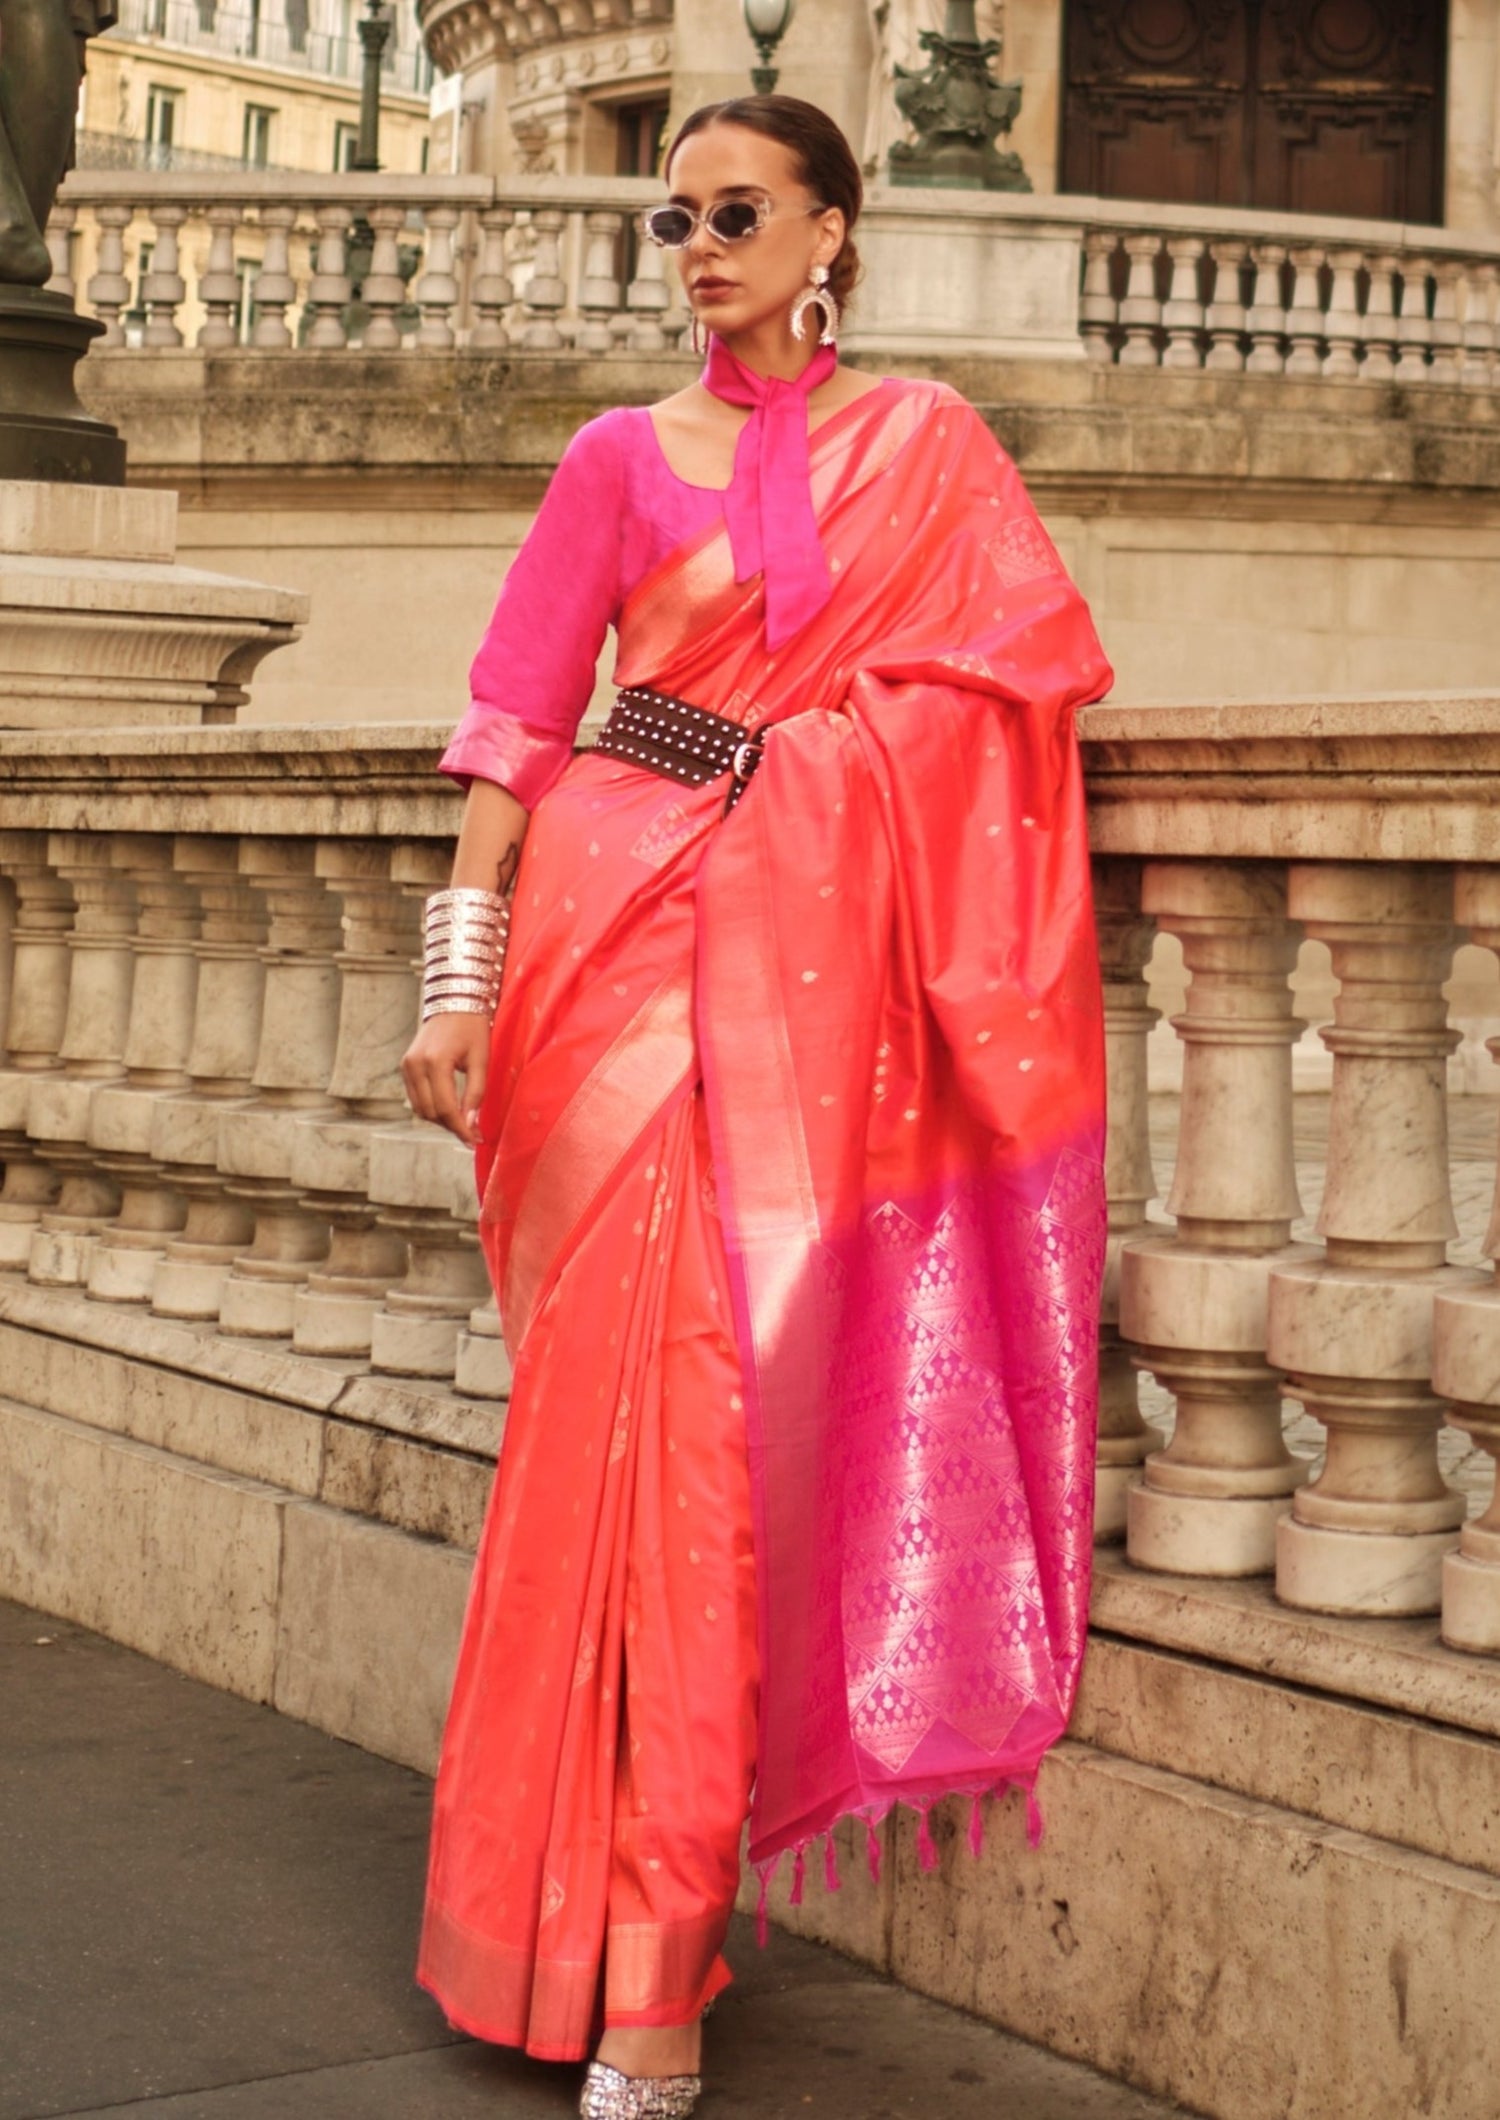 Buy orange handloom kanjivaram saree pink blouse online shopping price for wedding.